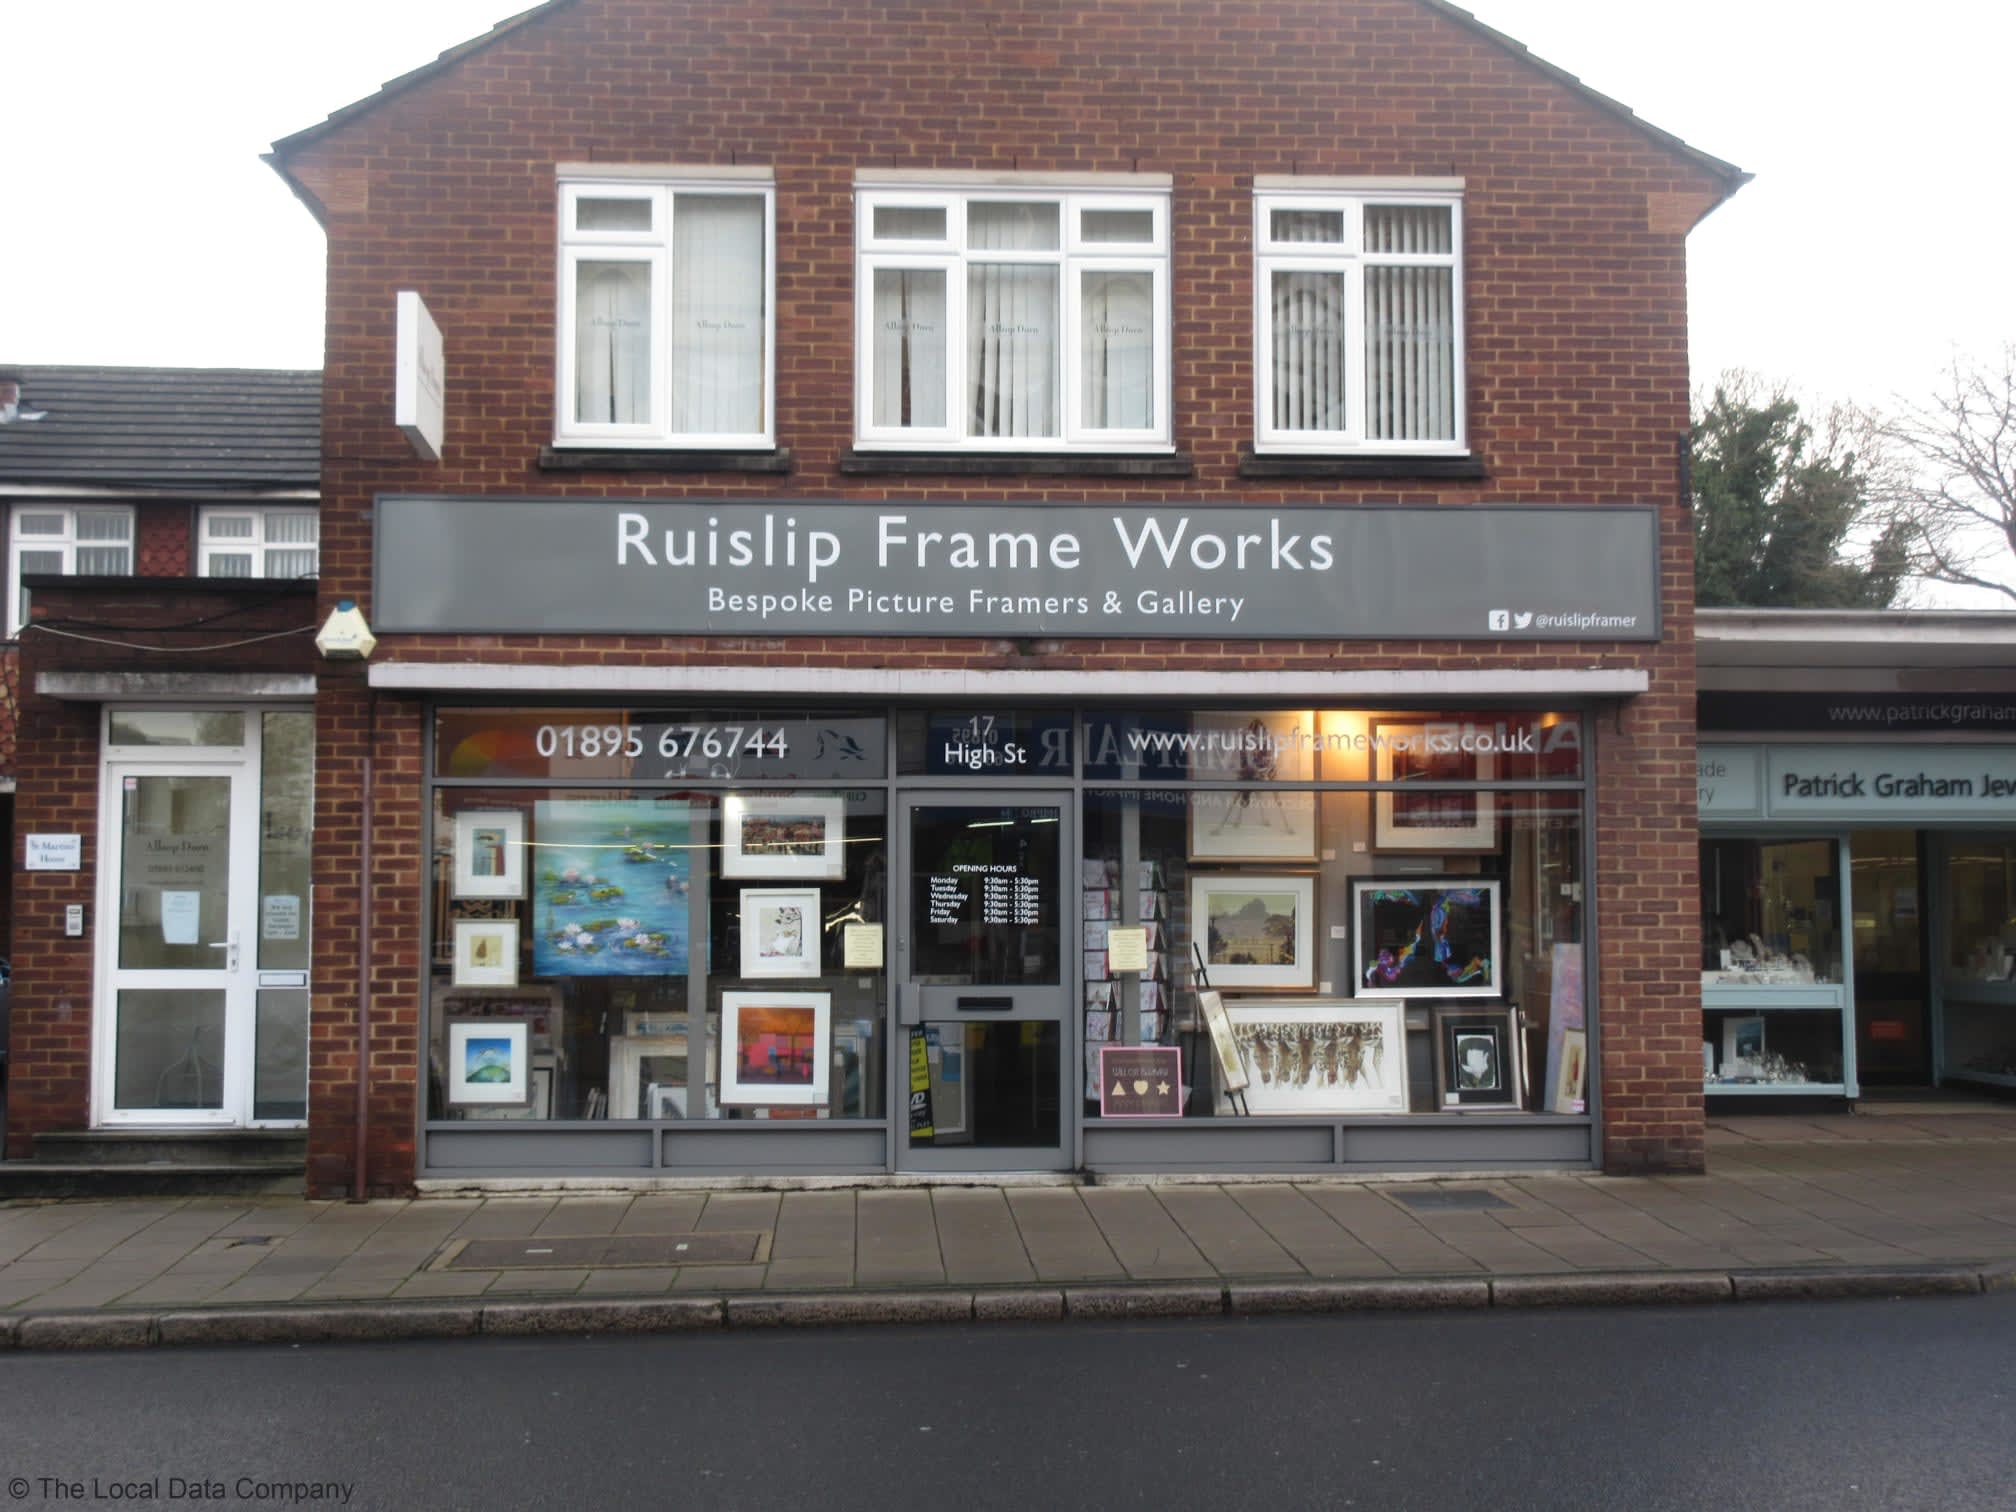 Ruislip Frame Works Ltd Ruislip 01895 676744